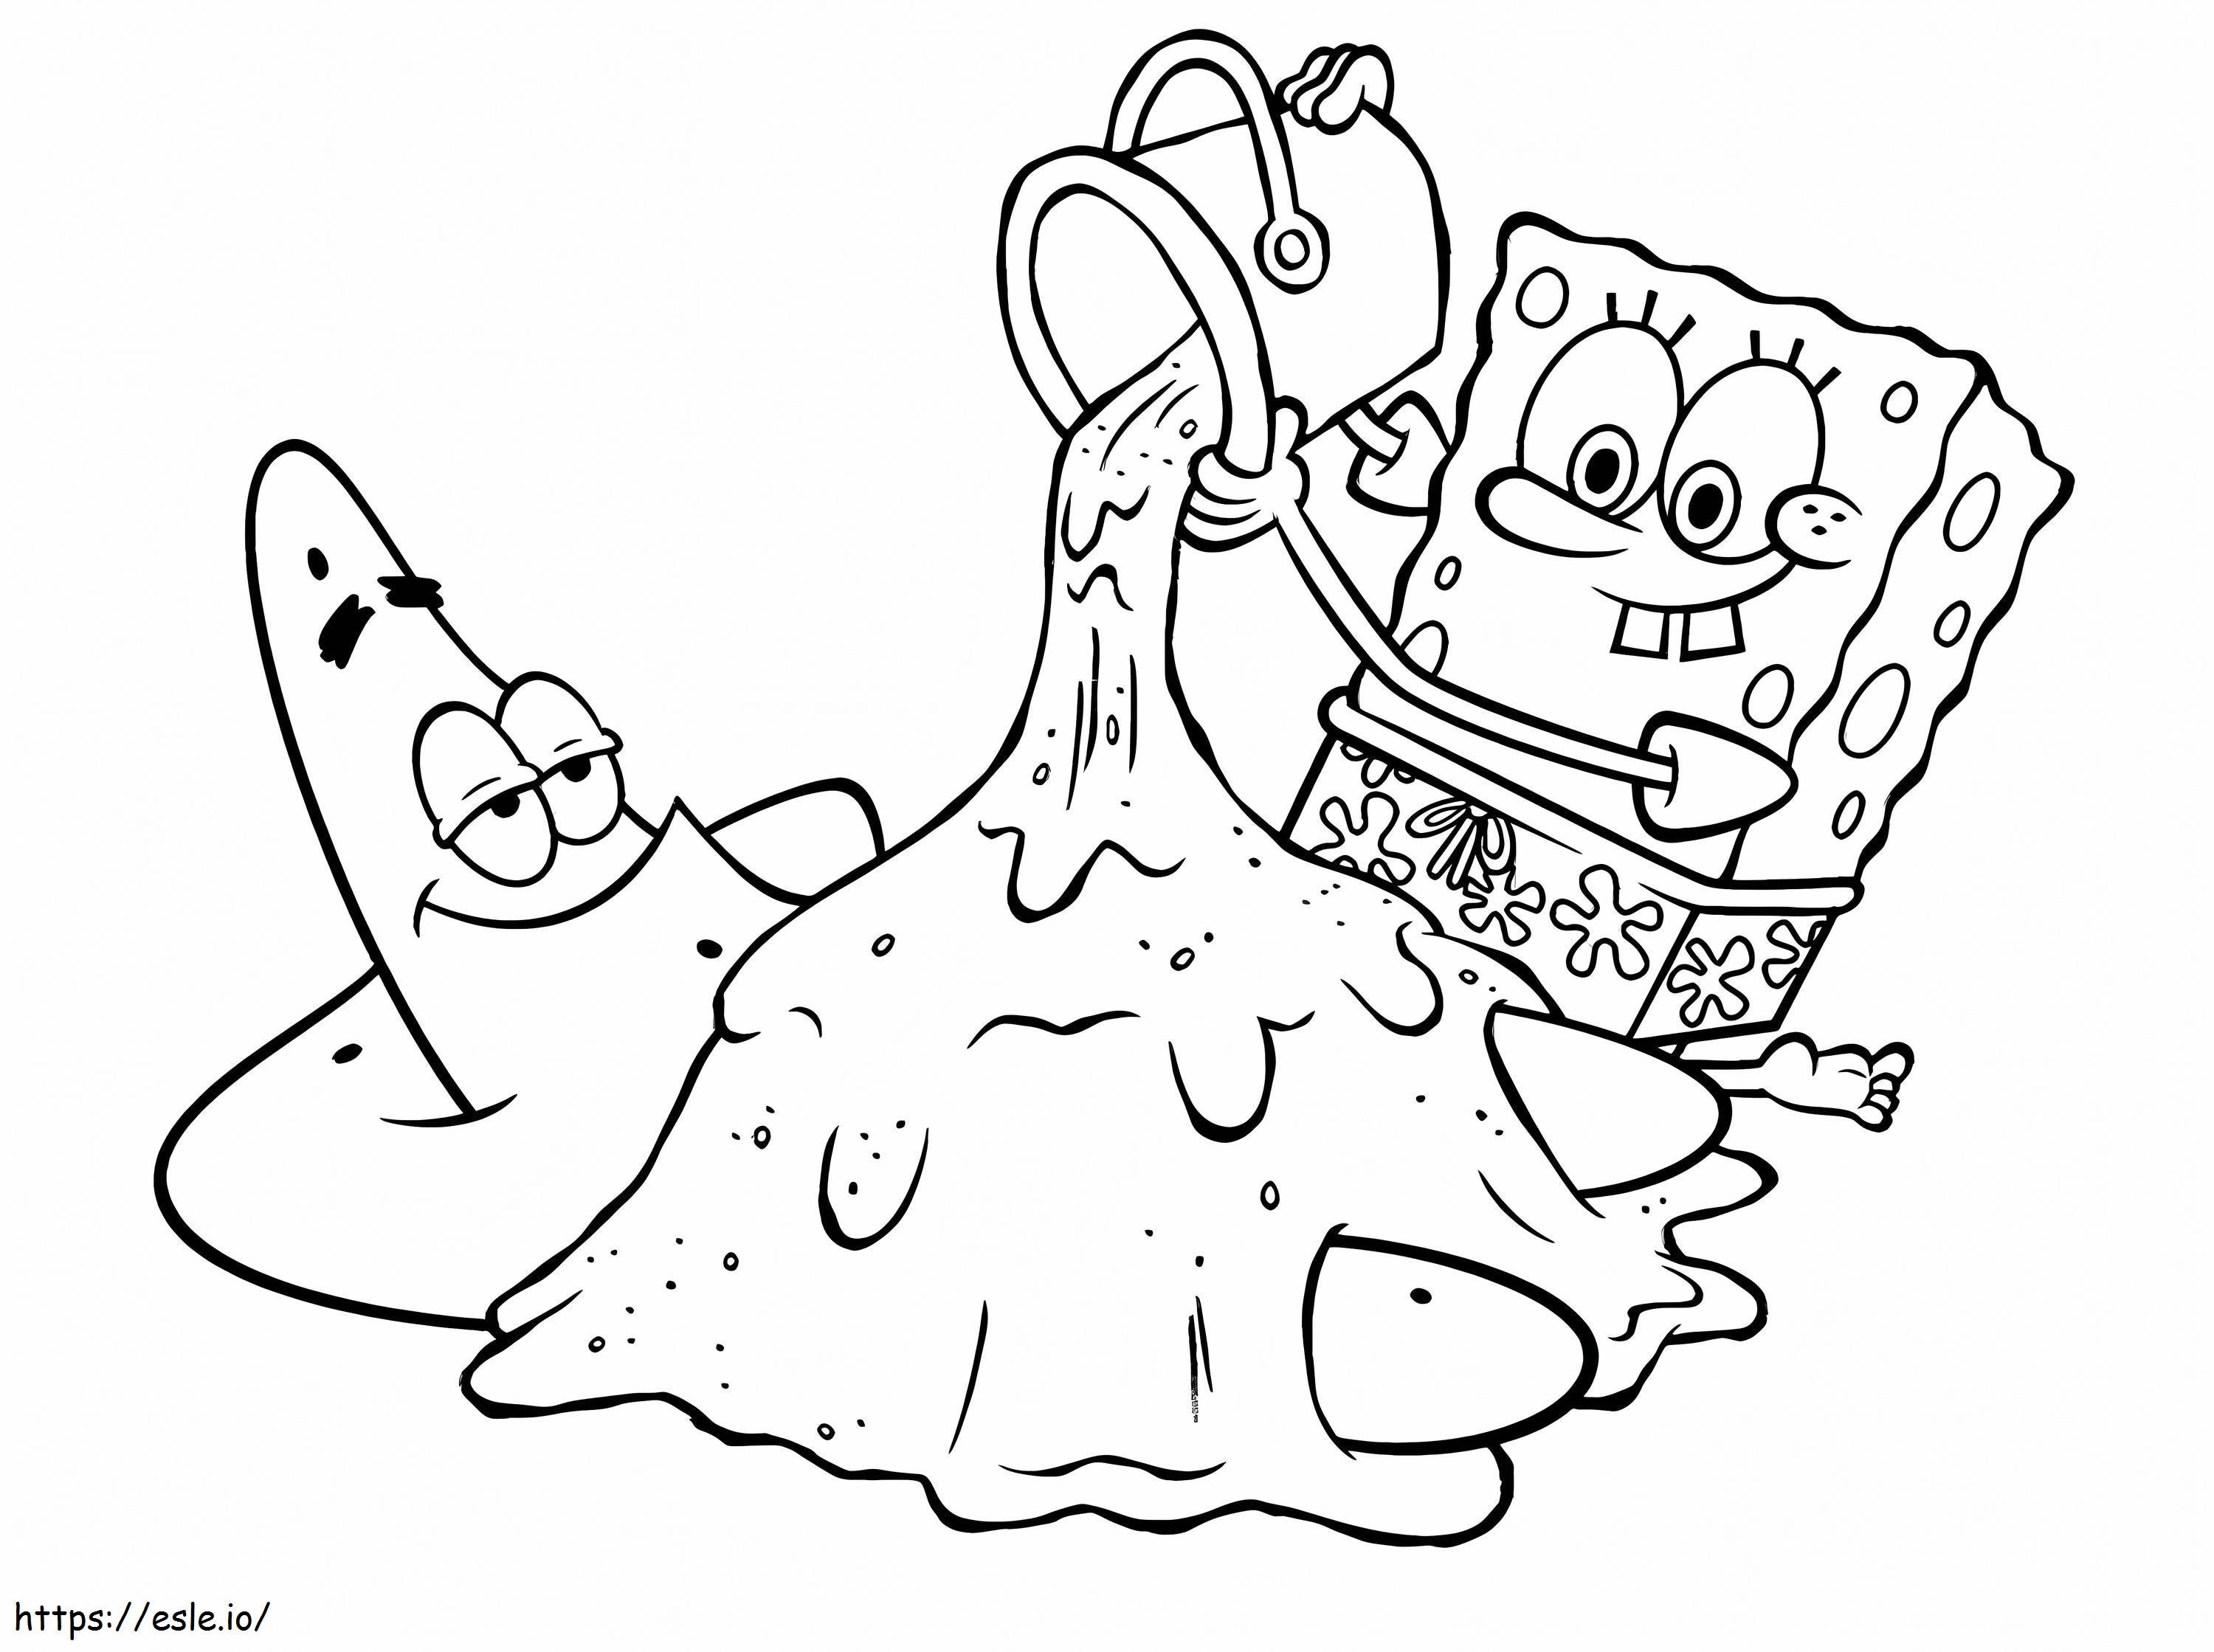 Spongebob și Patrick amuzant de colorat